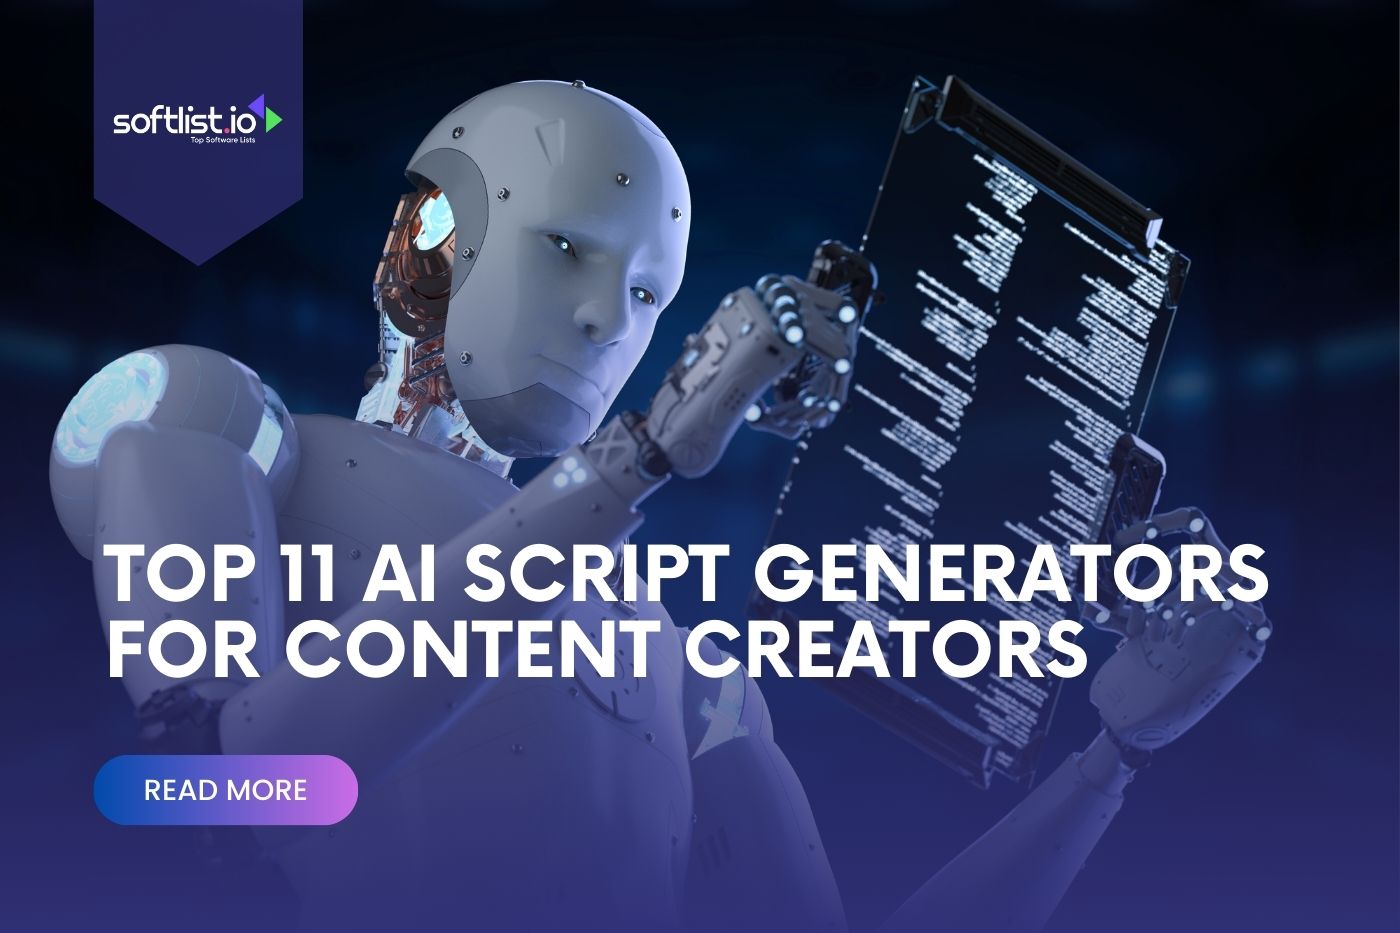 Top 11 AI Script Generators for Content Creators